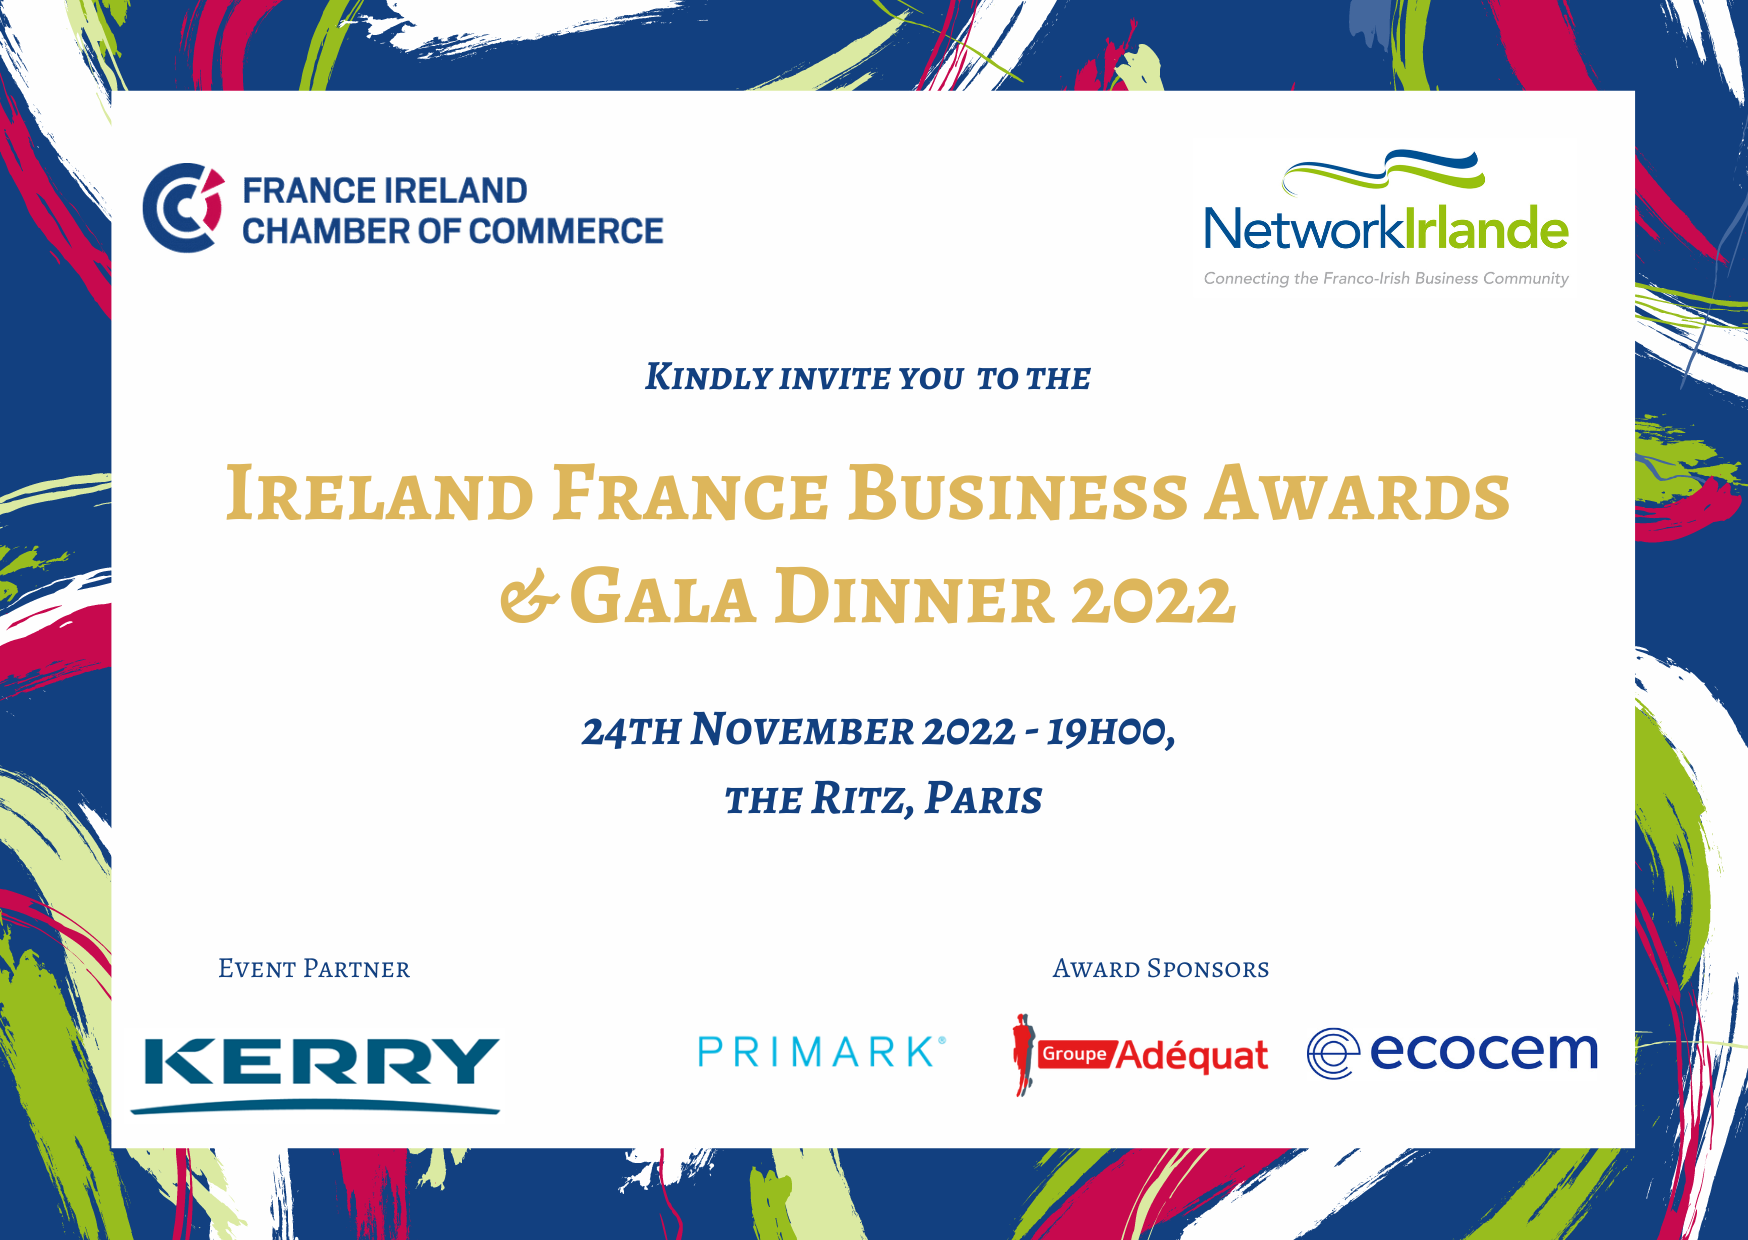 Ireland France Business Awards 2022